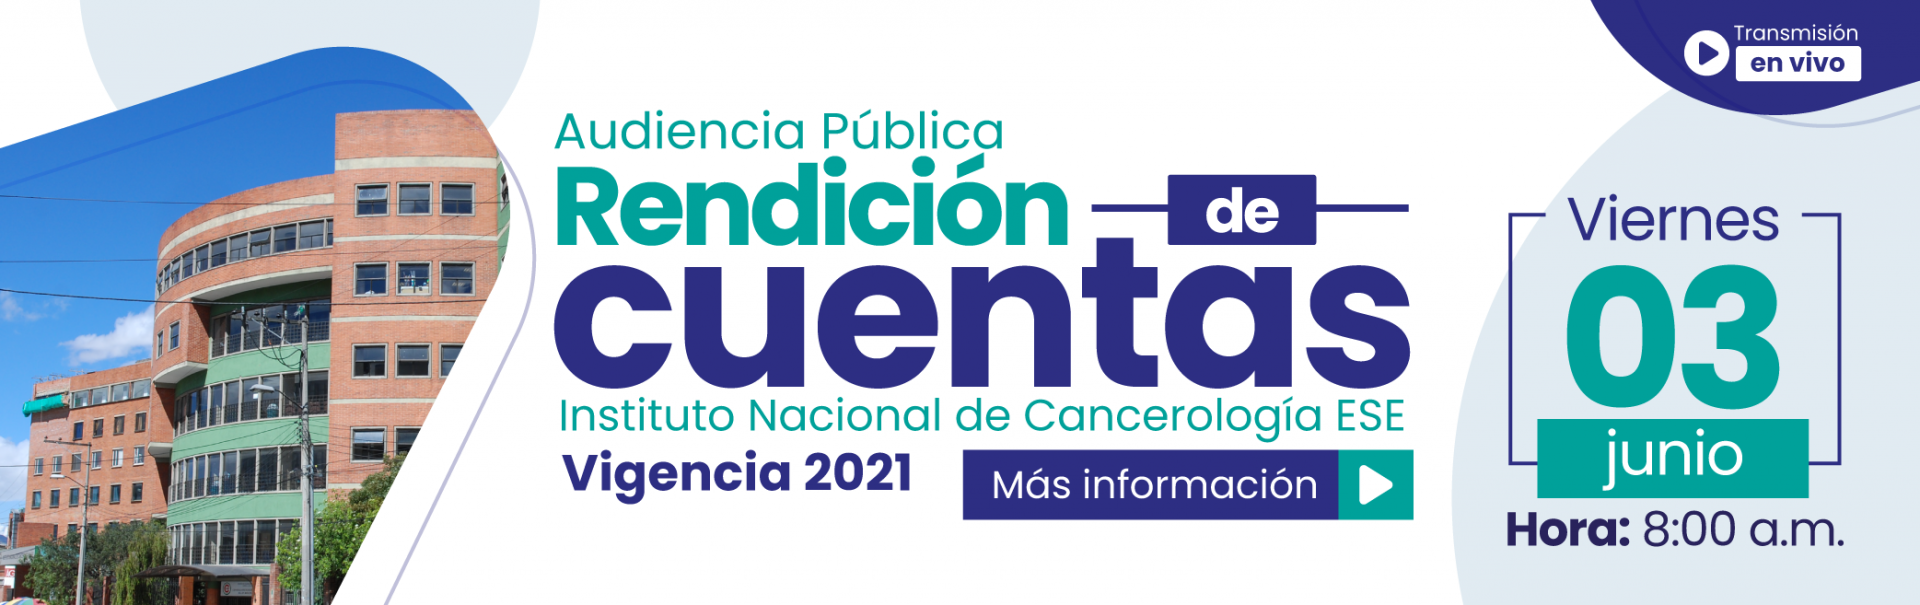 Imagen de Audiencia pública de rendición de cuentas vigencia 2021